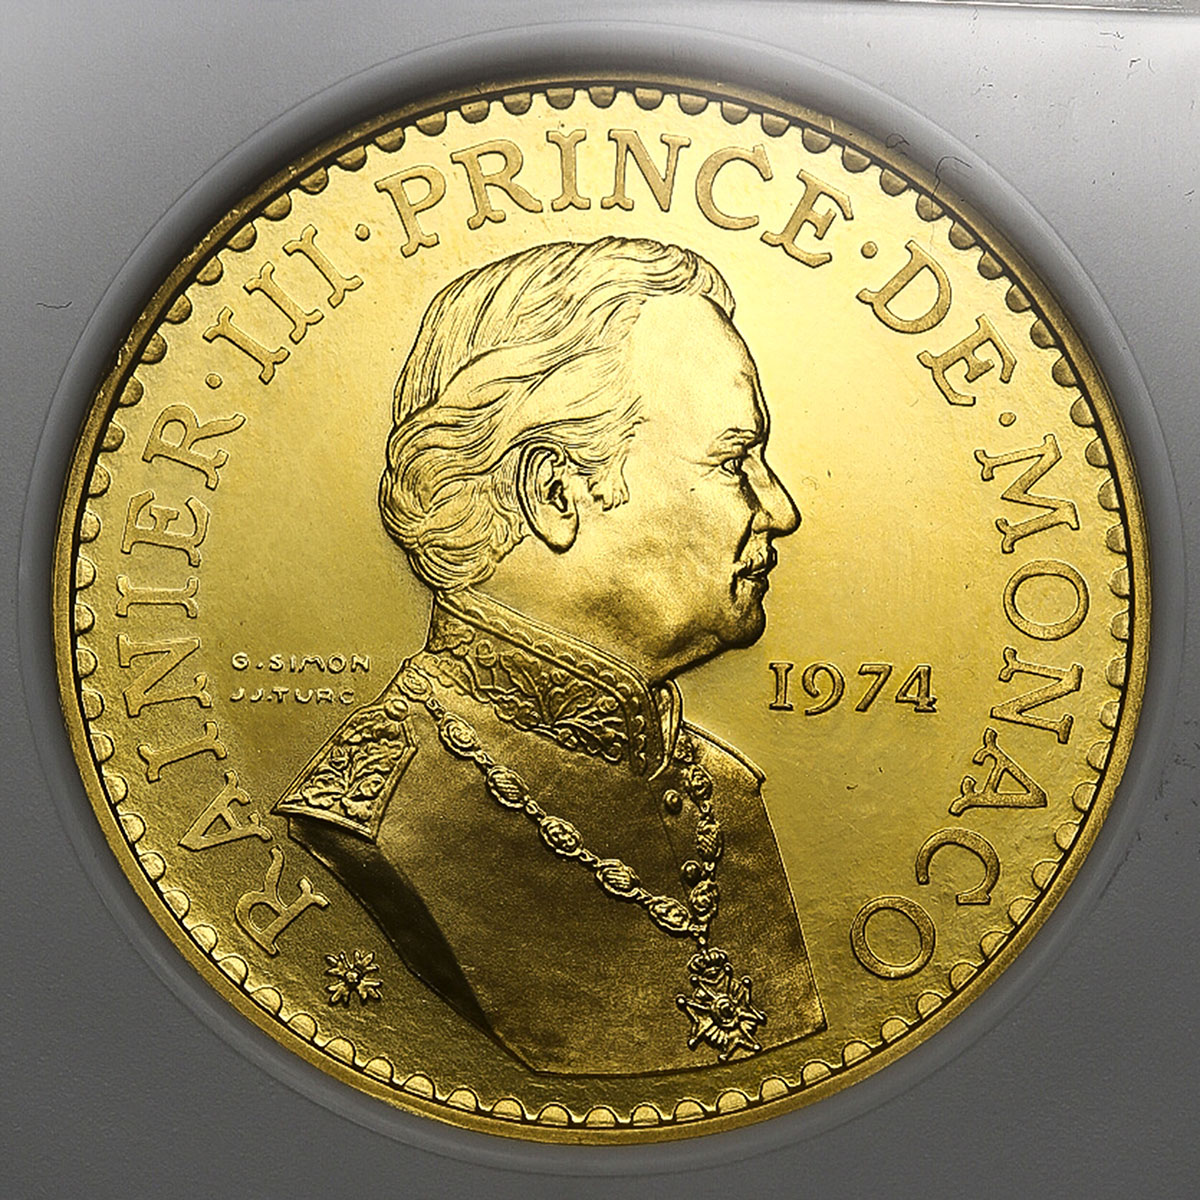 1974年モナコ レーニエ3世治世25周年 50フラン試鋳貨ピエフォー プルーフ金貨PCGS SP65